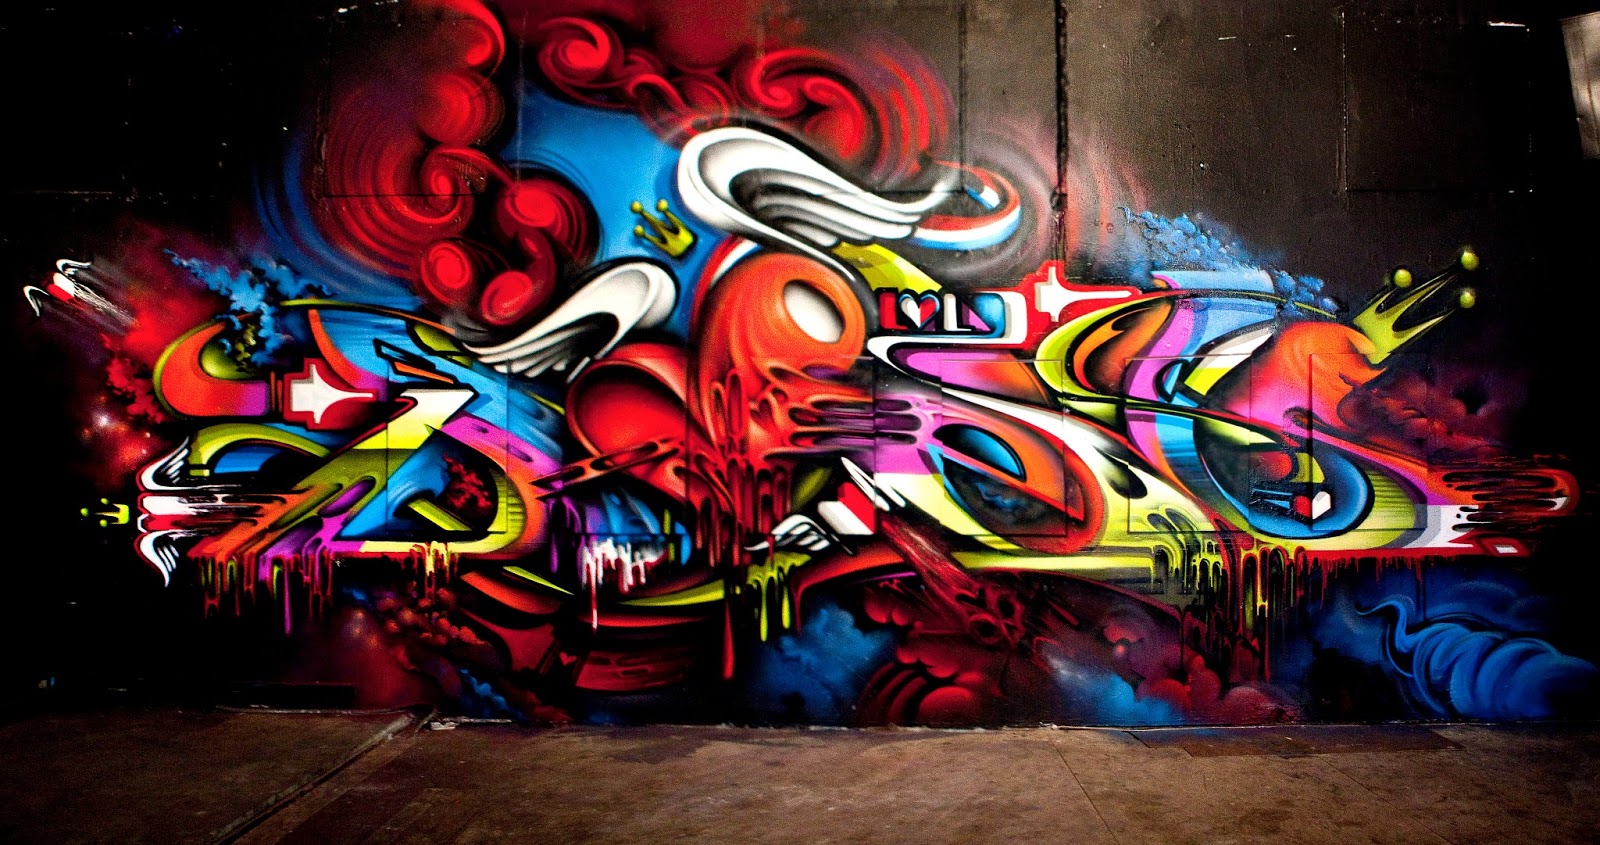 historia do graffiti e graffiti no brasil (1)